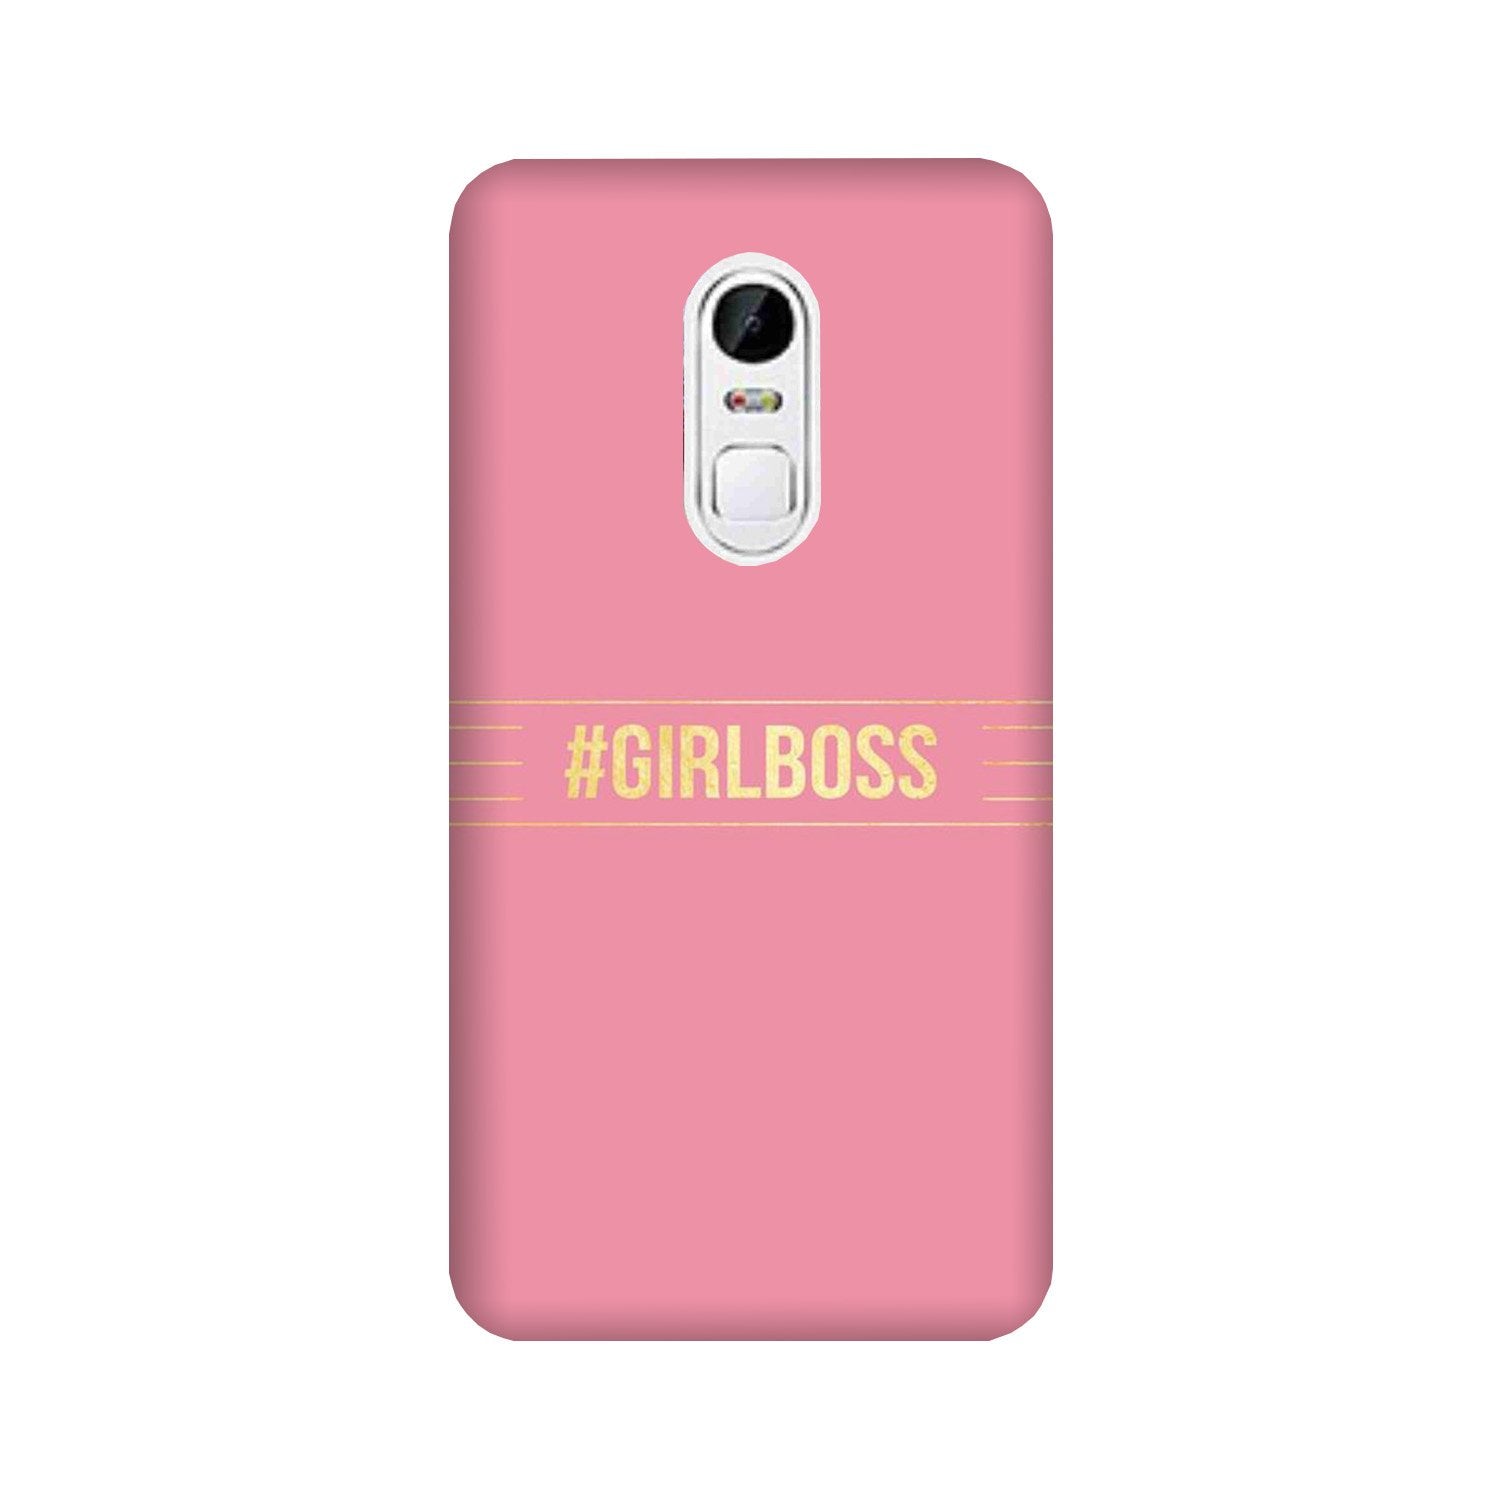 Girl Boss Pink Case for Lenovo Vibe X3 (Design No. 263)